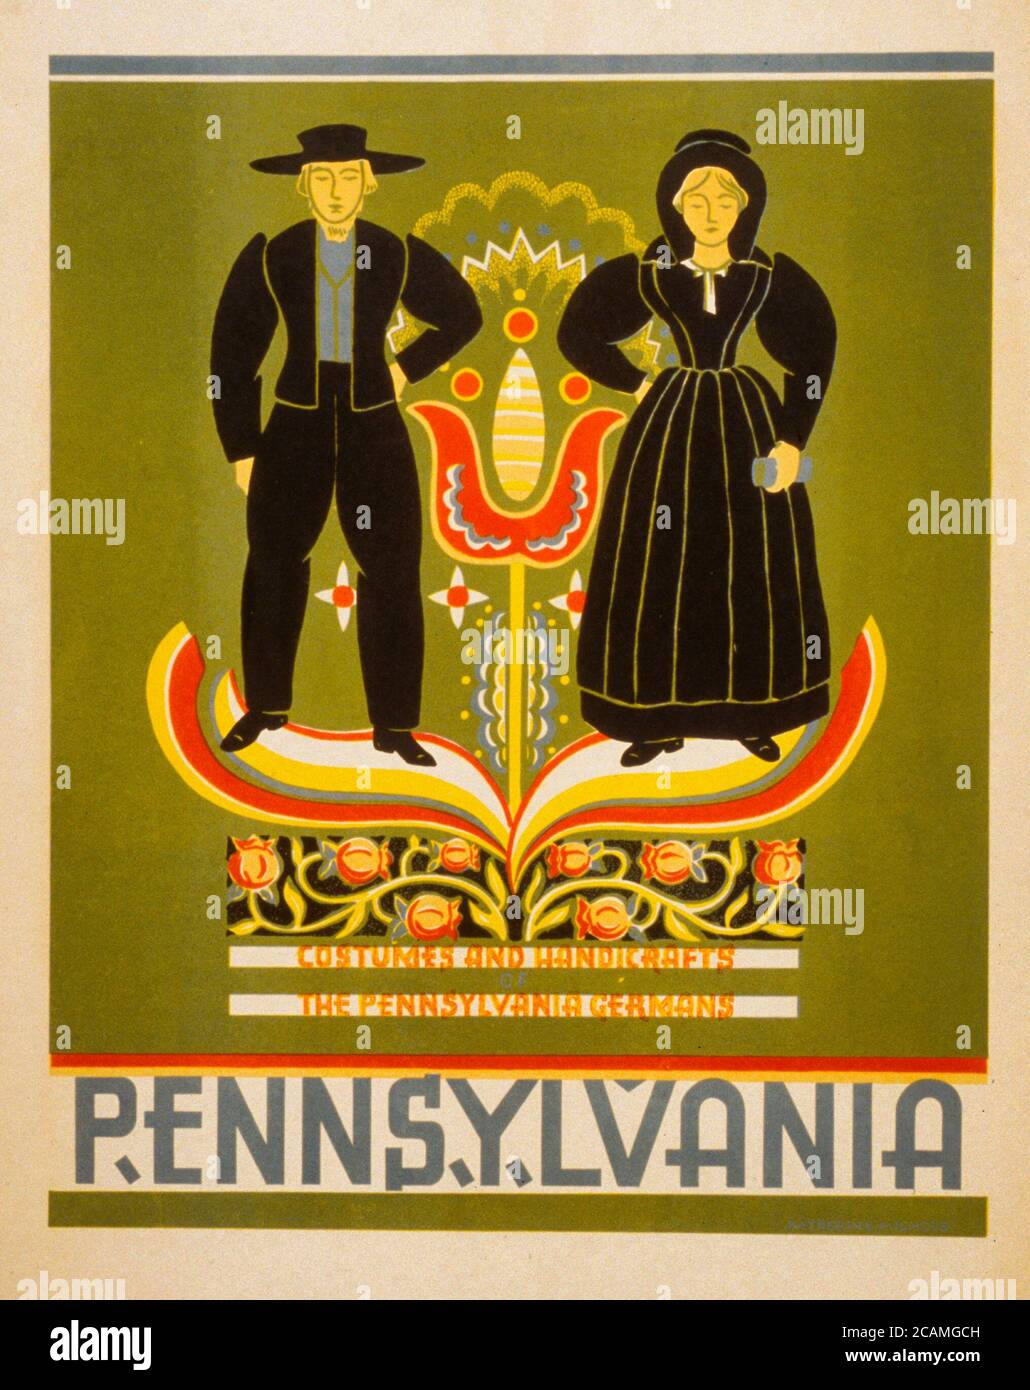 Costumi e artigianato della Pennsylvania, i tedeschi della Pennsylvania. Poster che promuove la Pennsylvania, mostrando una coppia Amish, circa 1939 Foto Stock